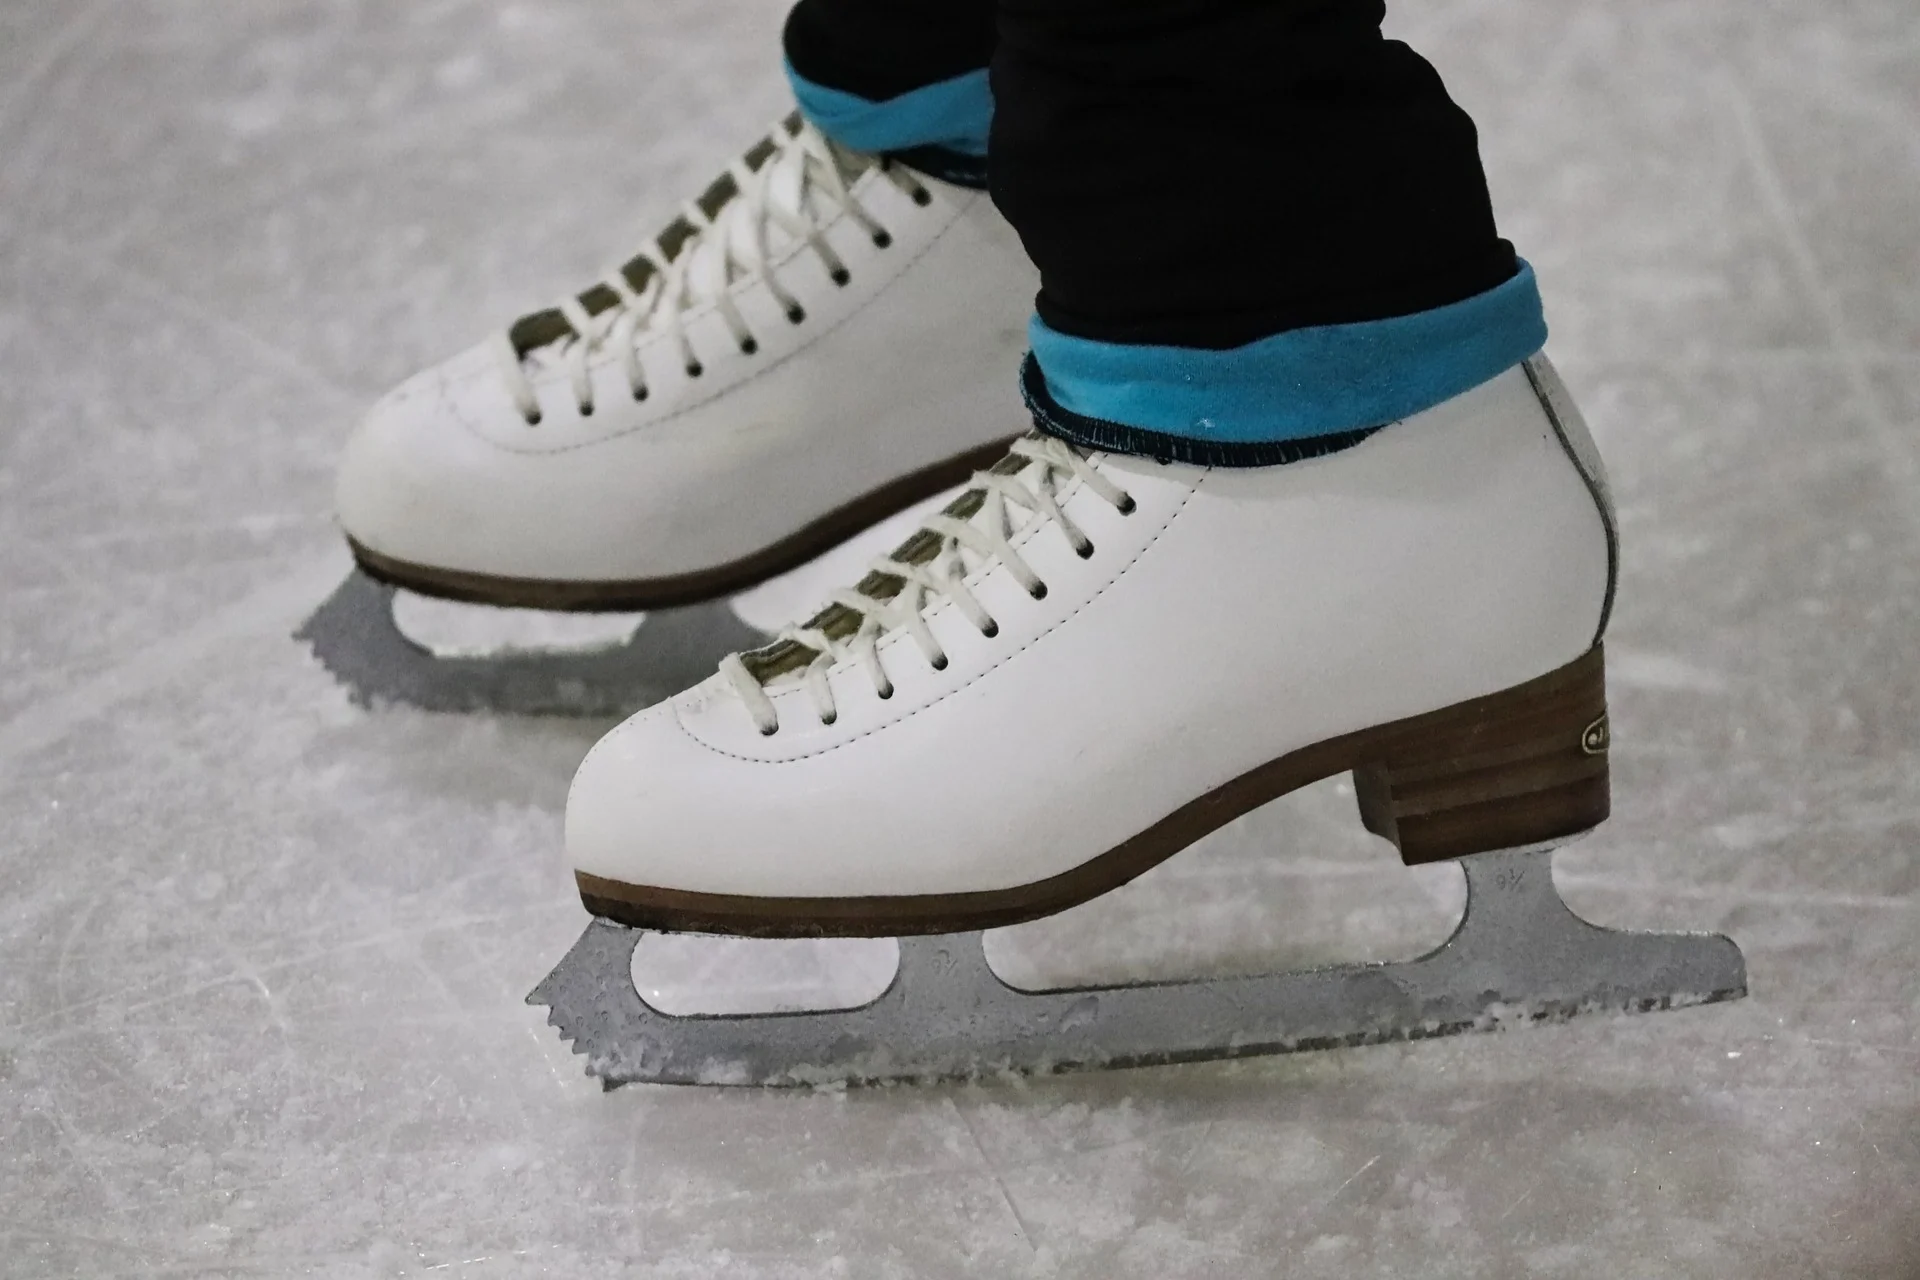 Mauvaise nouvelle : cette patinoire iconique de Montréal n'ouvrira pas cet hiver